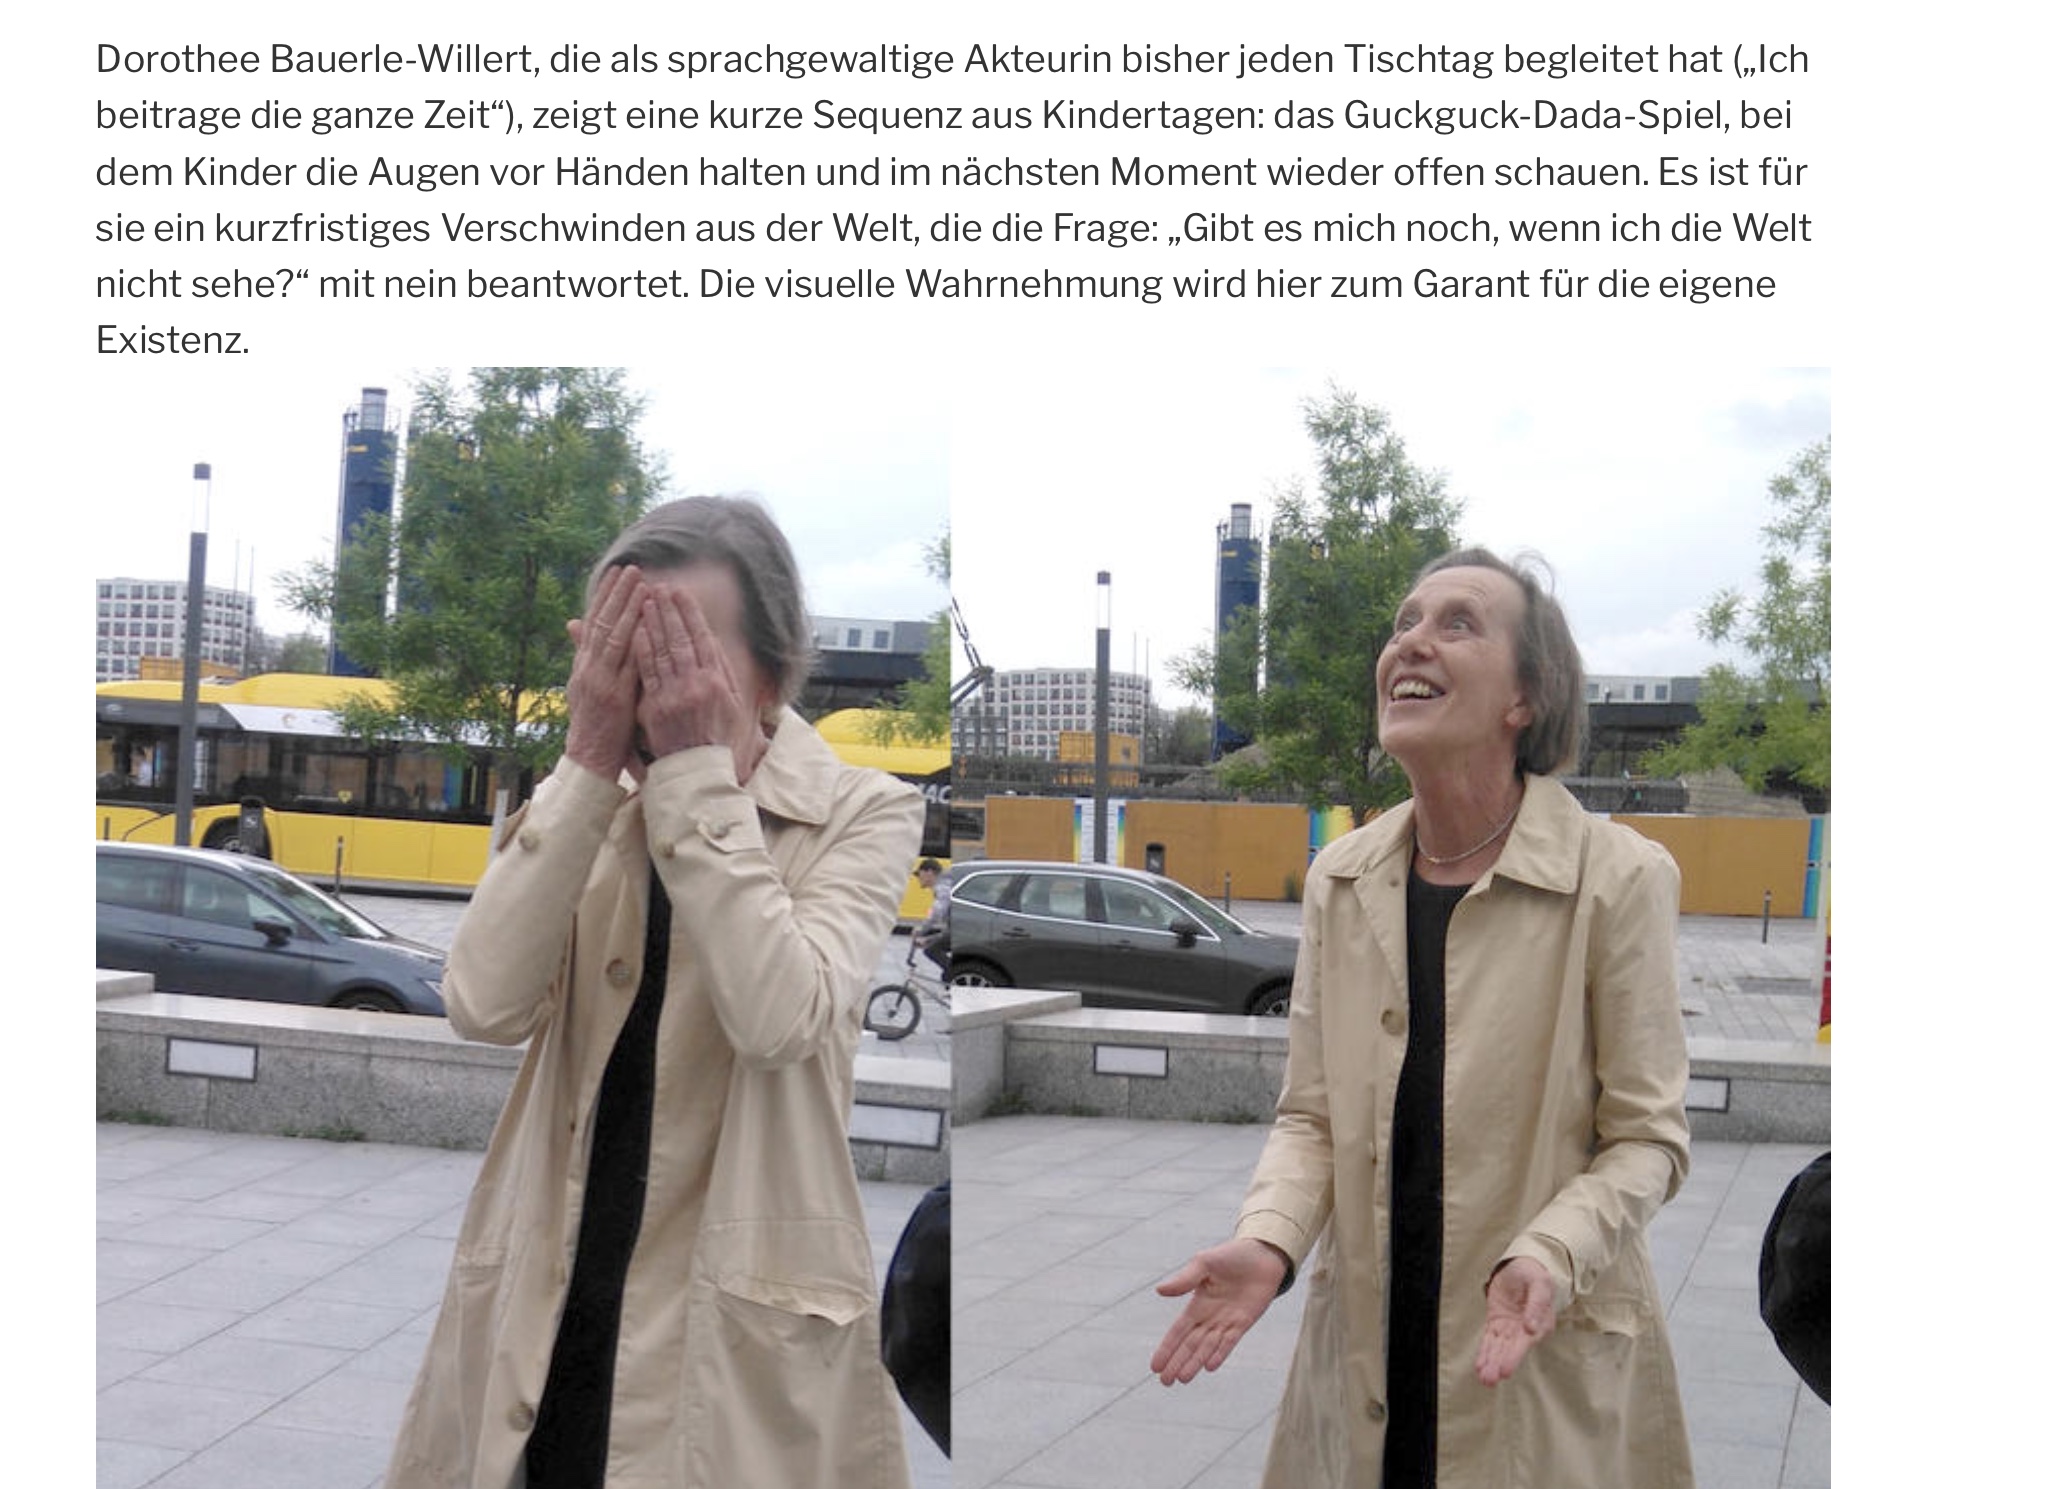 Performance-Beitrag von Dorothee zu VERSCHWINDEN am 24. 6. 2021 vor der Berliner Philharmonie. Foto: Nanae Suzuki, Text: Christiane ten Hoevel/></p>
				</div>

			</div>

		</article>
				</li><!-- #comment-## -->
		</ol>

		
	
	
		<div id=